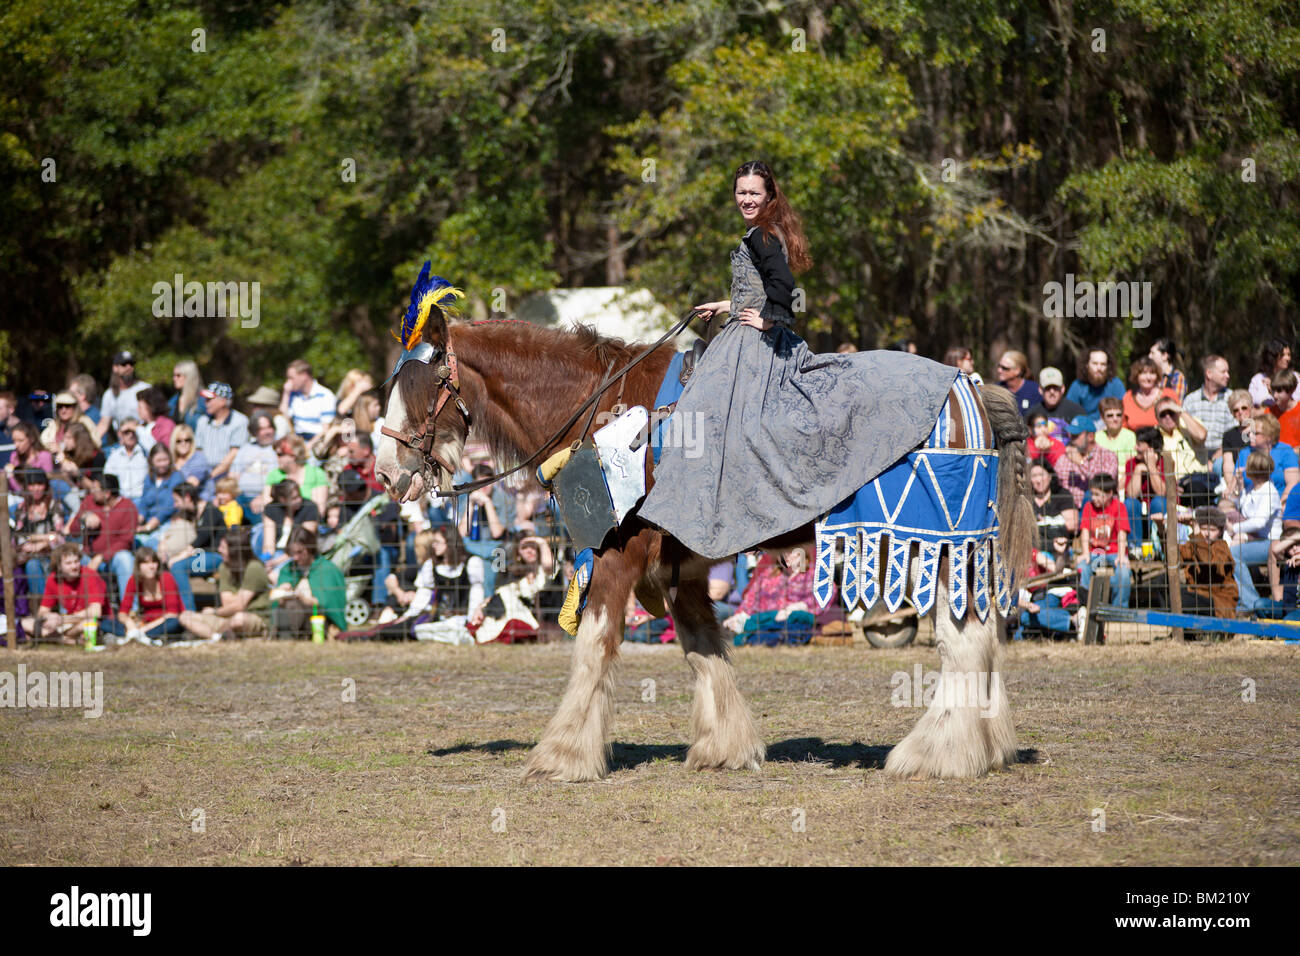 Gainesville FL - Jan 2009 - Femme vêtue de vêtements période Moyen-Âge son cheval Équitation lors d'une manifestation médiévale Faire Banque D'Images